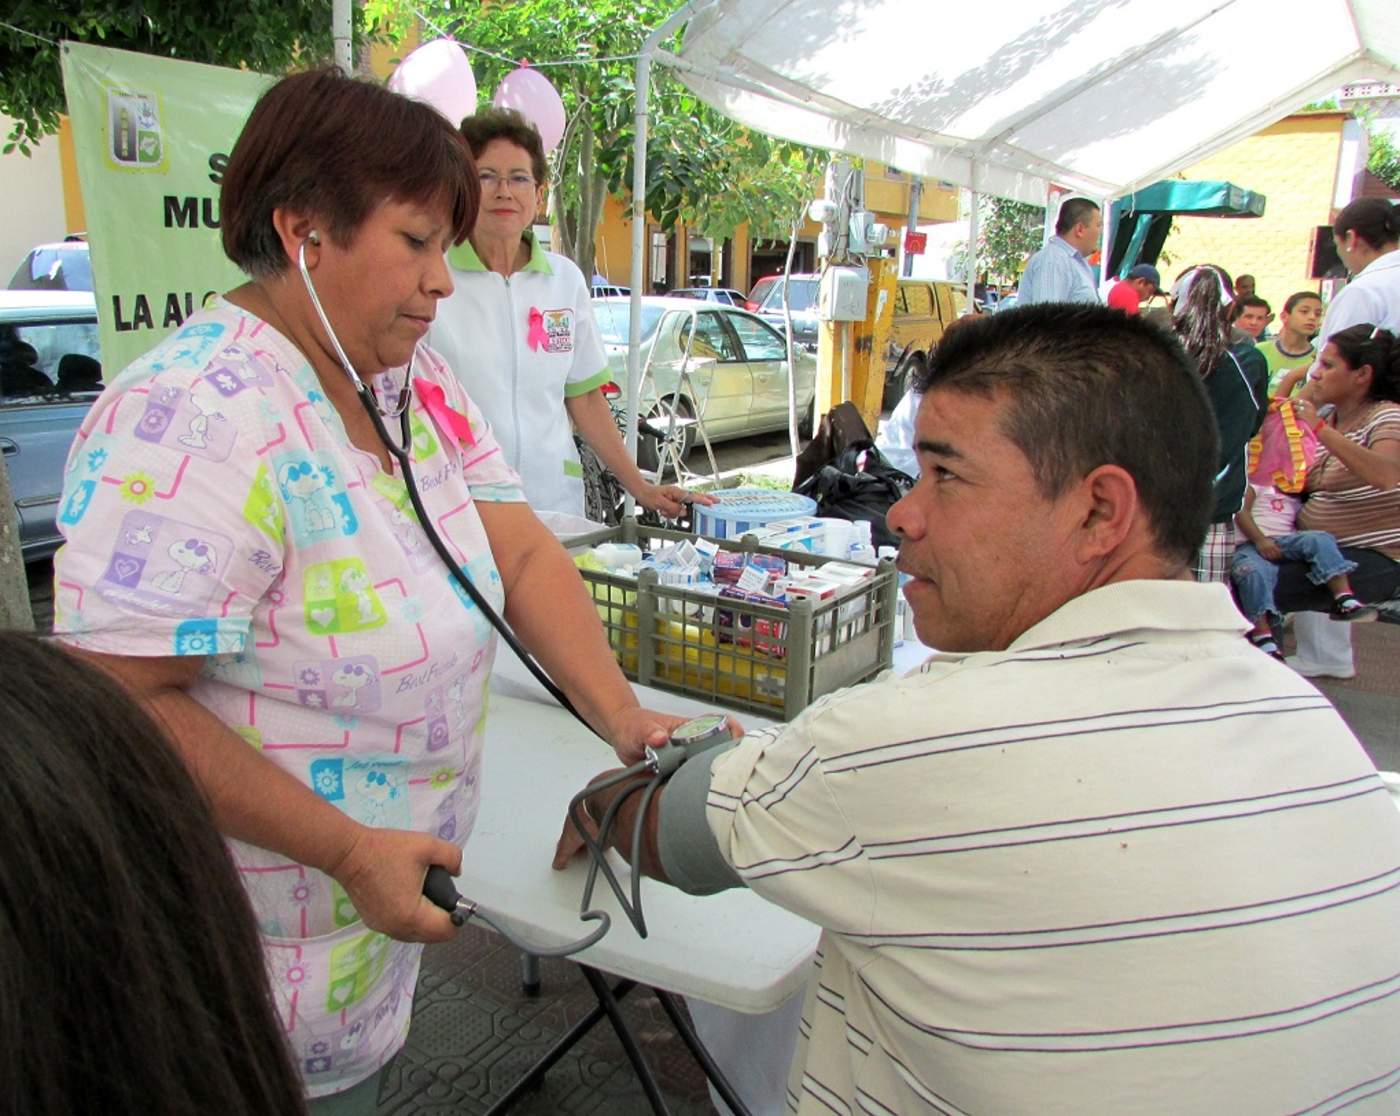 La clínica ofrece de manera gratuita consultas médicas generales todos los días del año, las 24 horas, así como otro tipo de servicios a bajo costo. (El Siglo de Torreón)